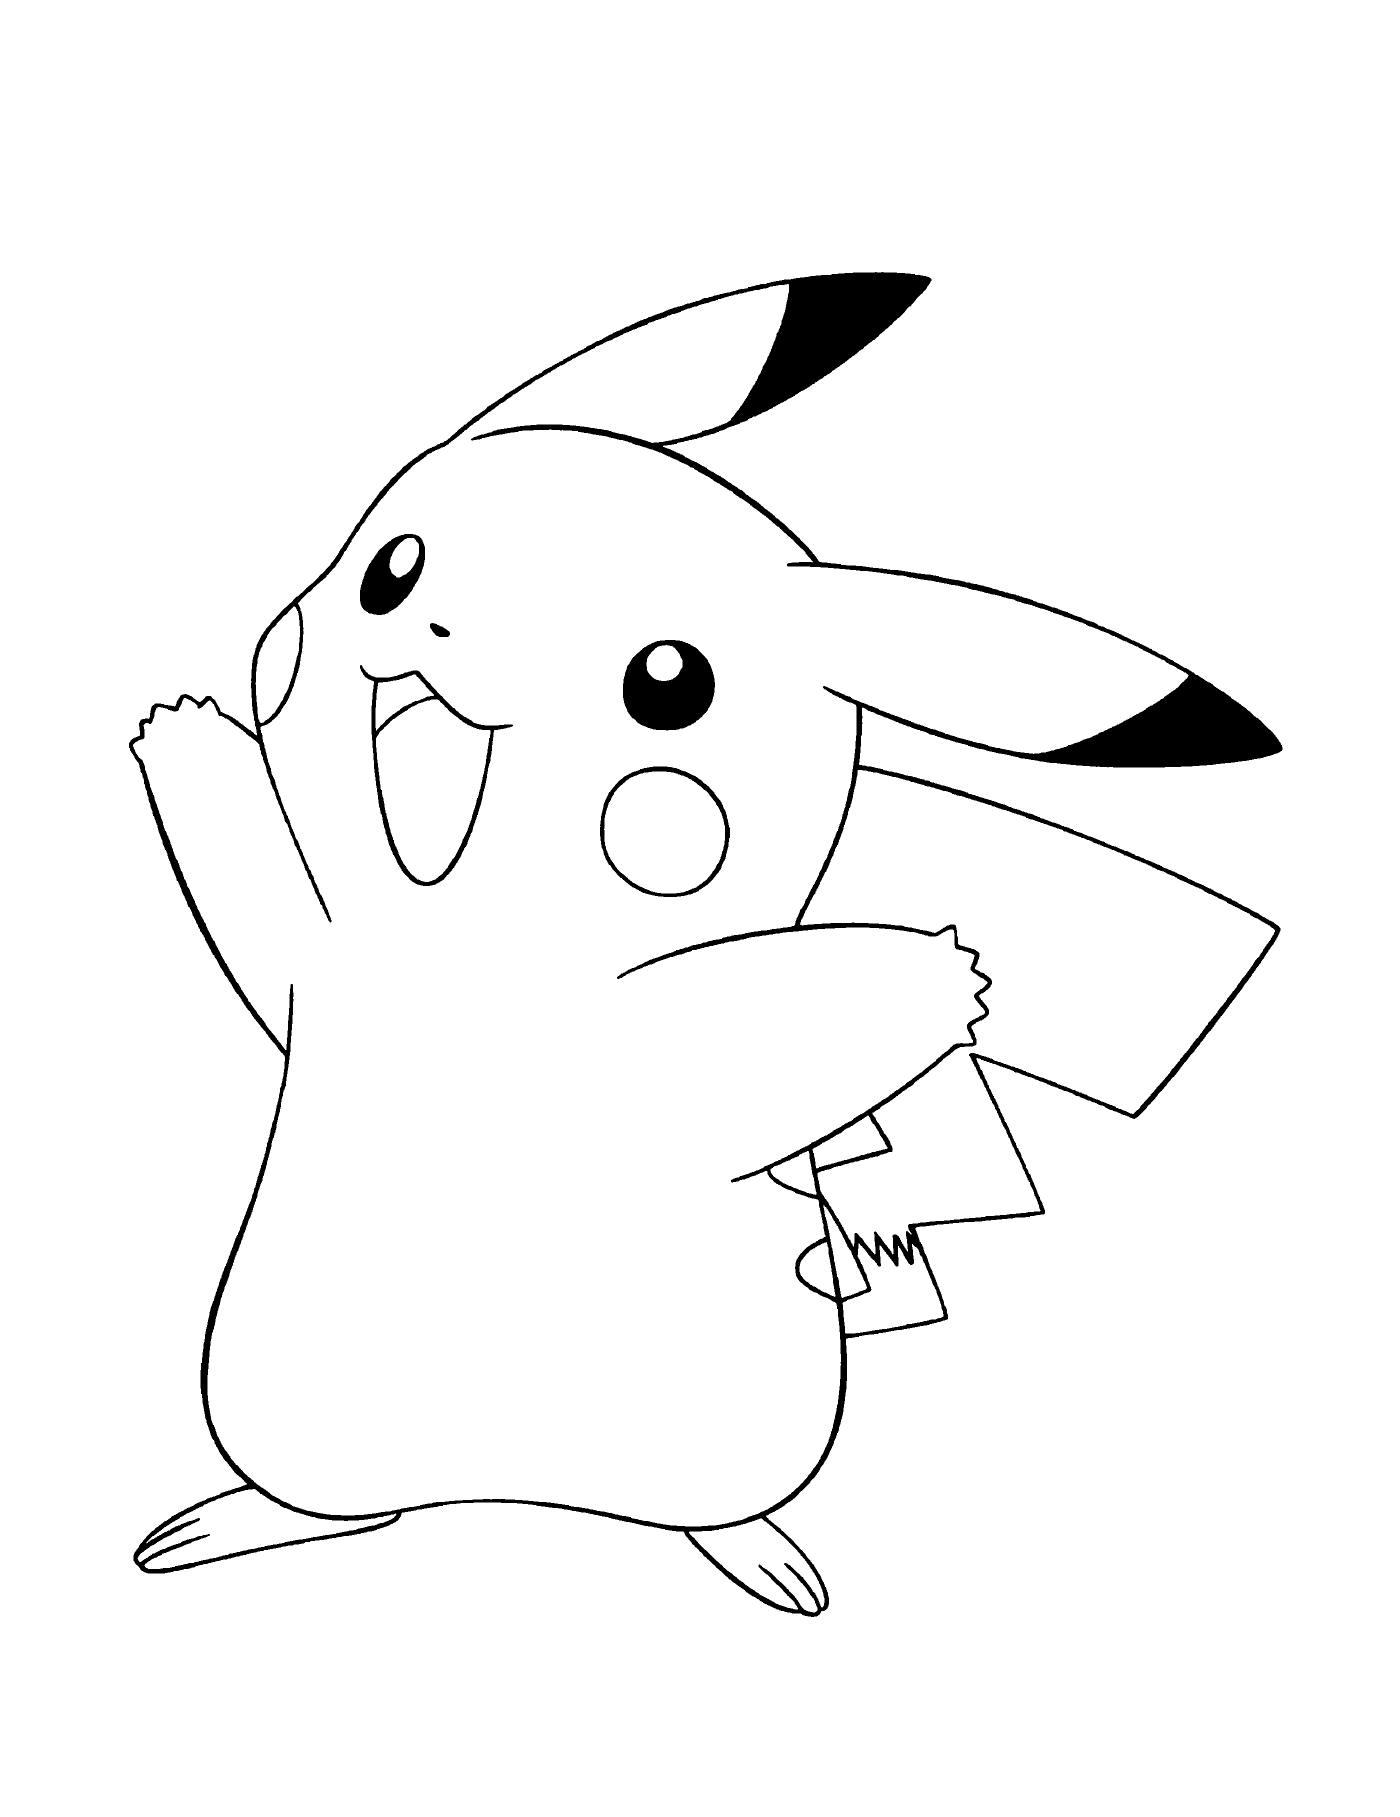  Pikachu, emblemático e cativante 